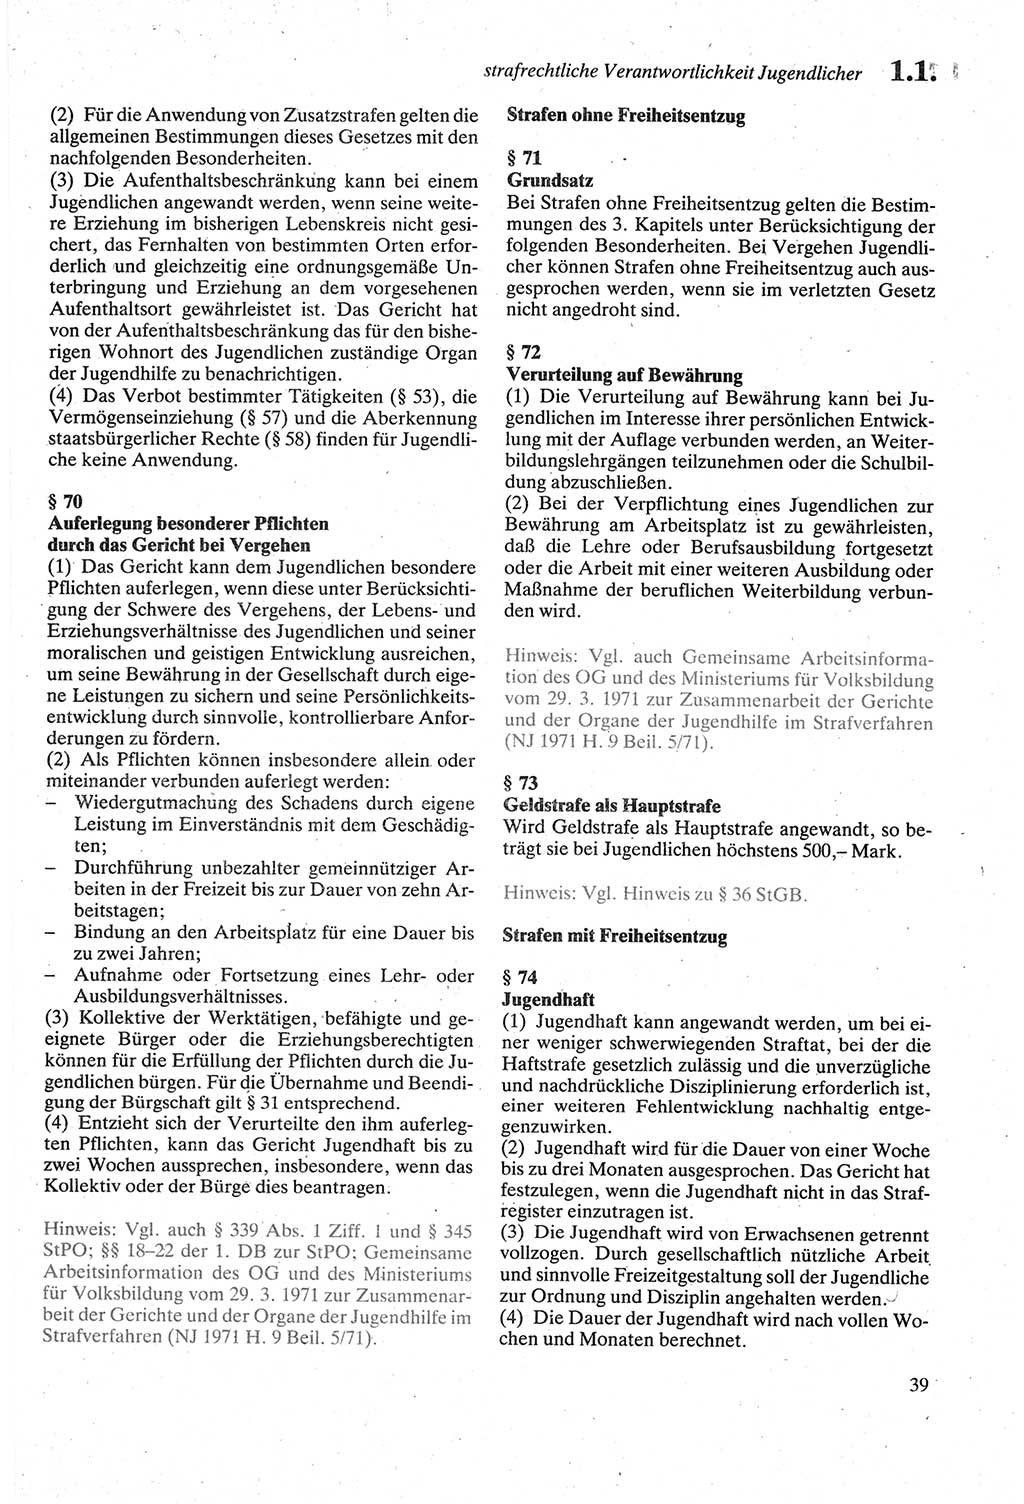 Strafgesetzbuch (StGB) der Deutschen Demokratischen Republik (DDR) sowie angrenzende Gesetze und Bestimmungen 1979, Seite 39 (StGB DDR Ges. Best. 1979, S. 39)